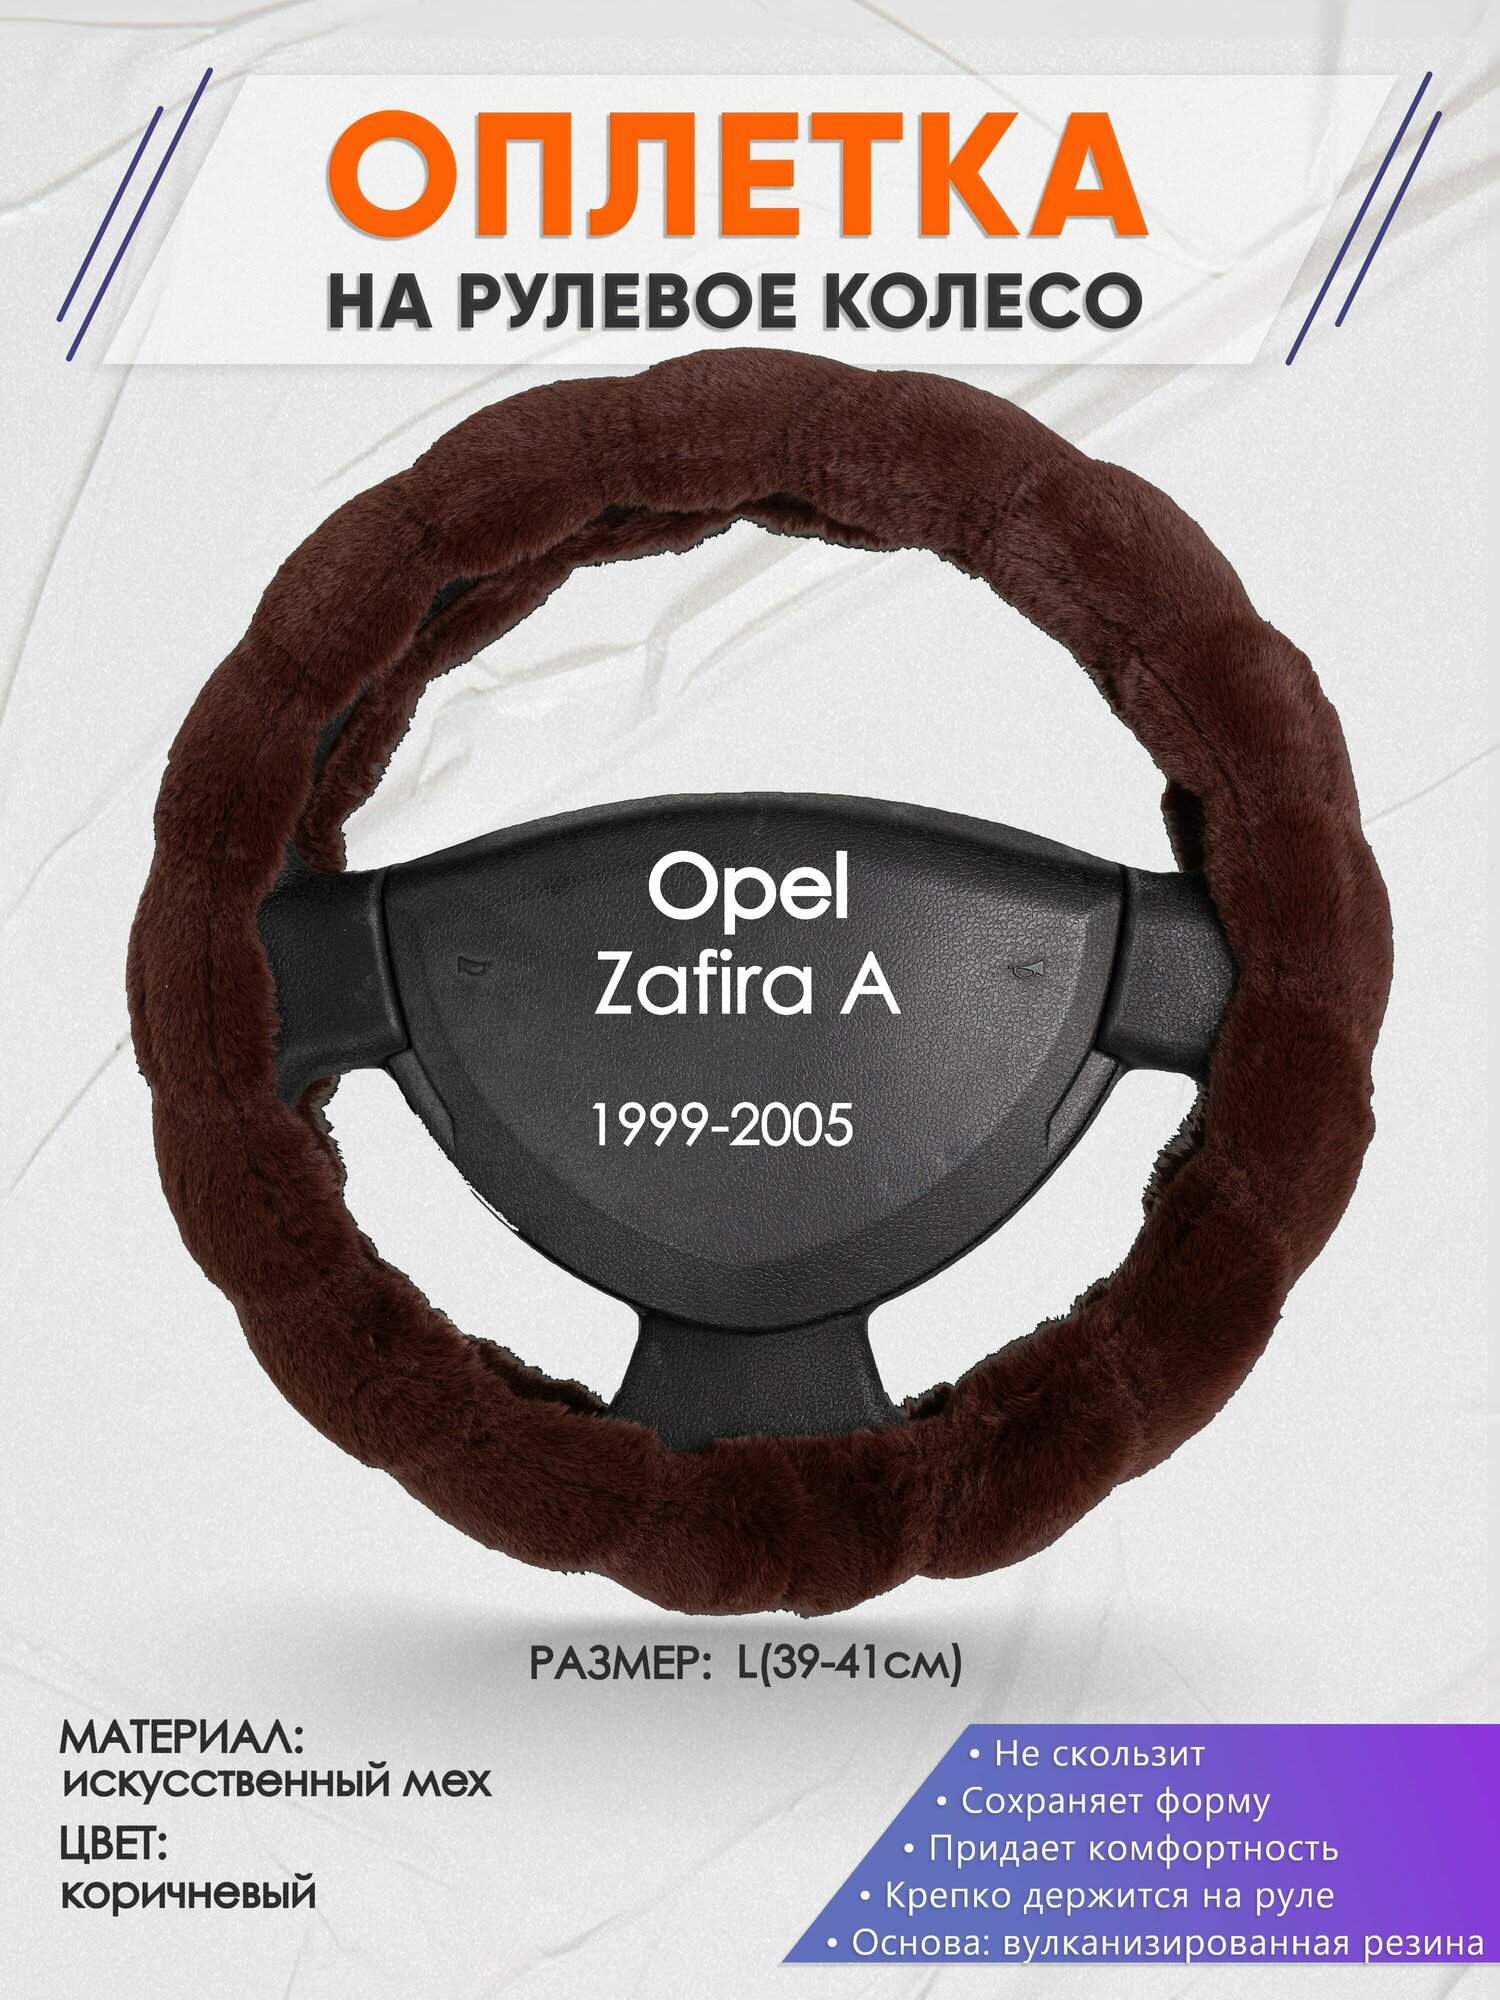 Оплетка на руль для Opel Zafira А(Опель Зафира А) 1999-2005 L(39-41см) Искусственный мех 42